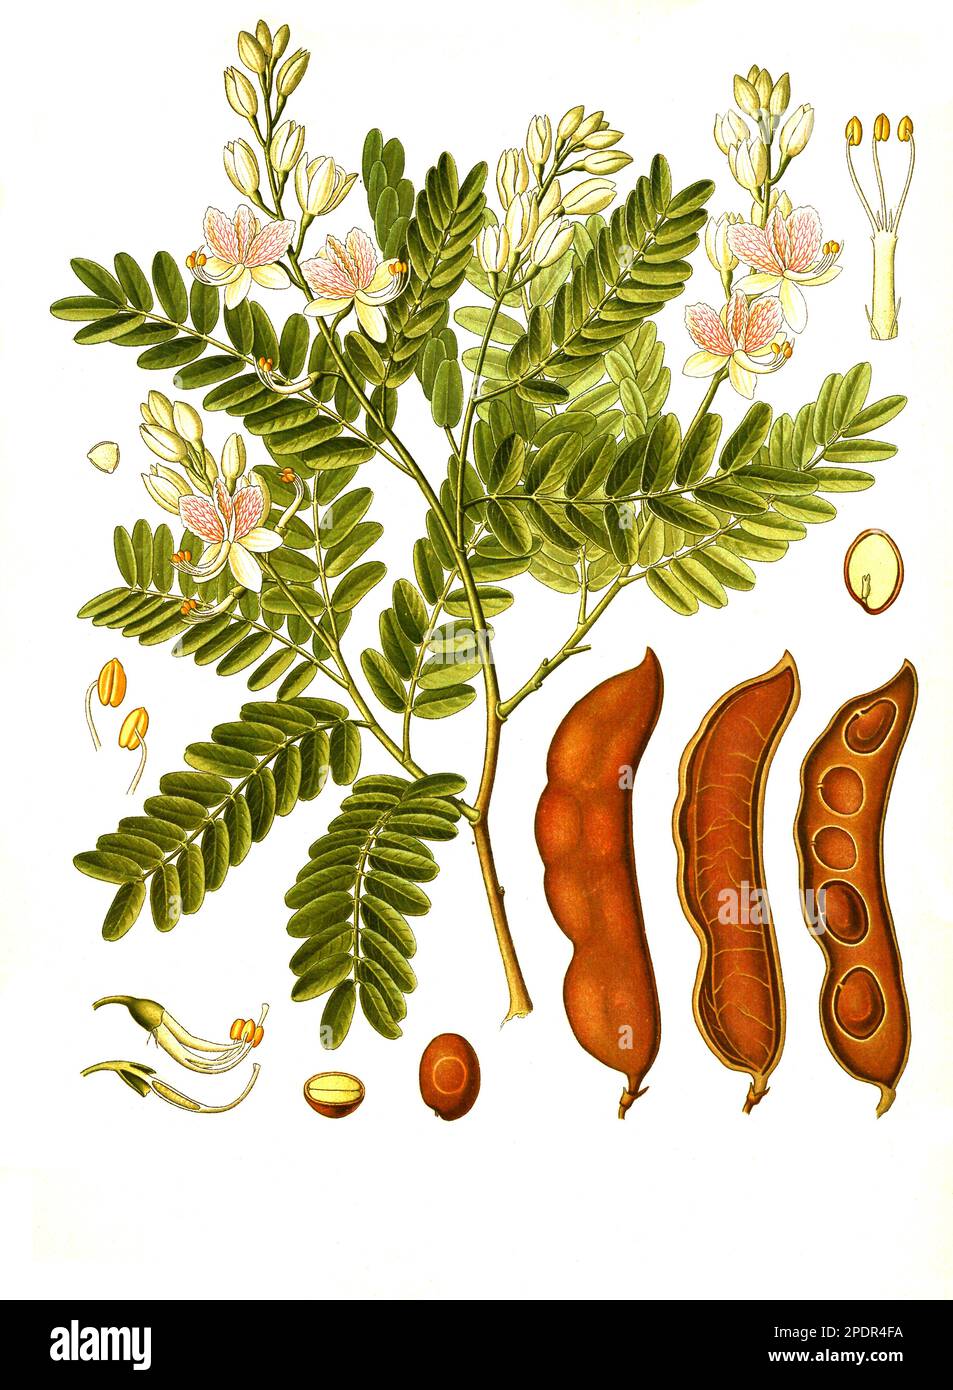 Heilpflanze, Tamarindenbaum (Tamarindus indica), auch Indische Dattel oder Sauerdattel, Historisch, digital restaurierte Reproduktion von einer Vorlage aus dem 19. Jahrhundert, Stock Photo